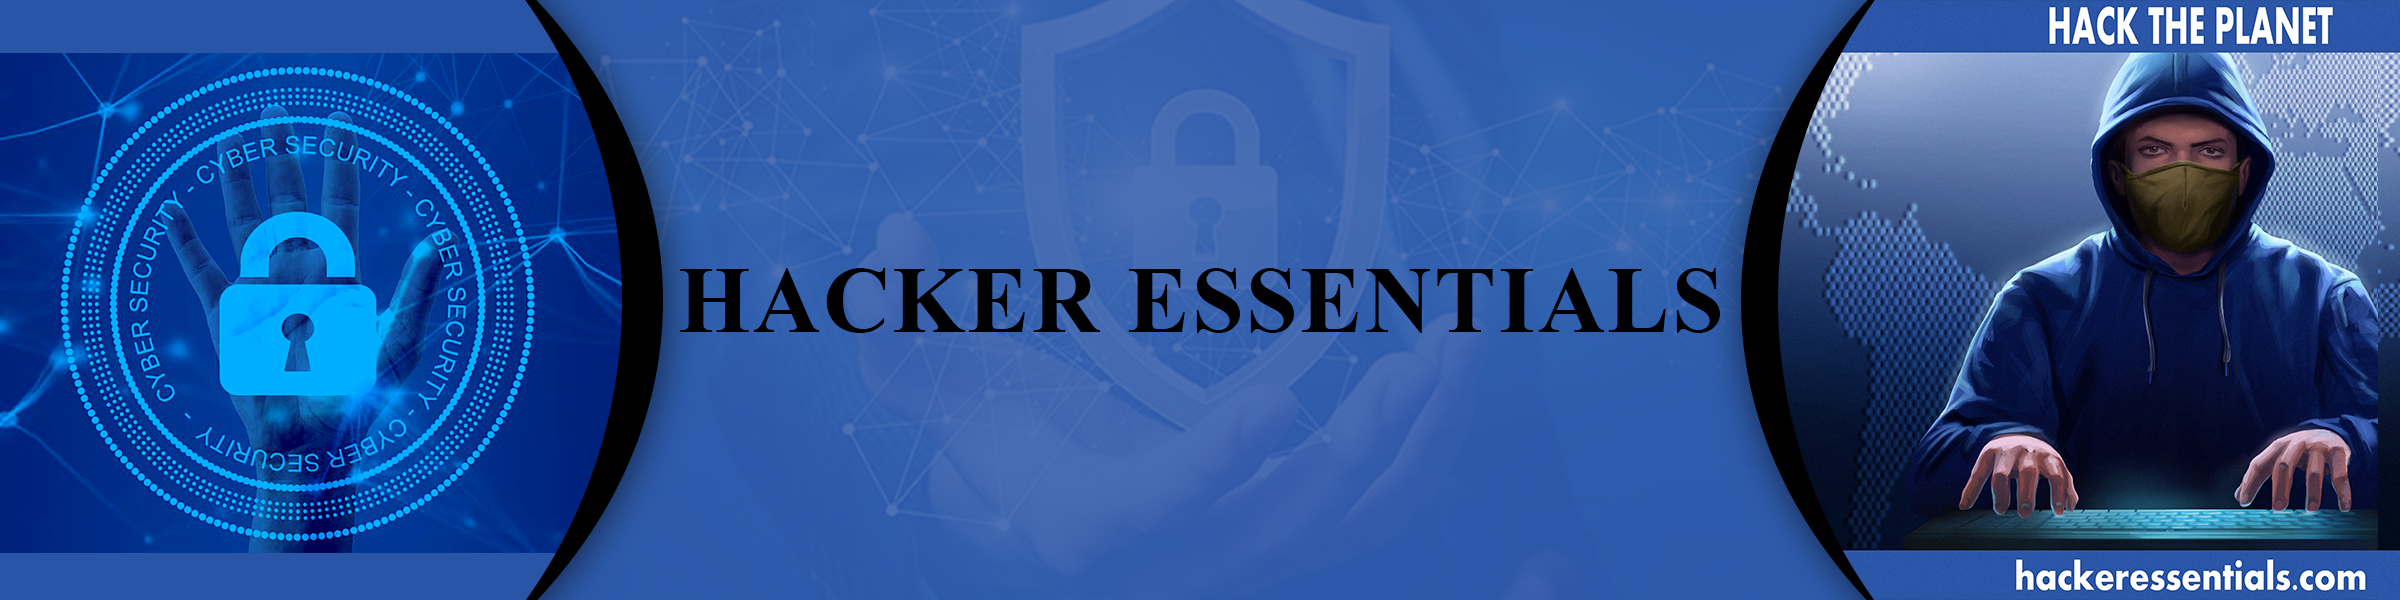 The Hacker Essentials Banner.